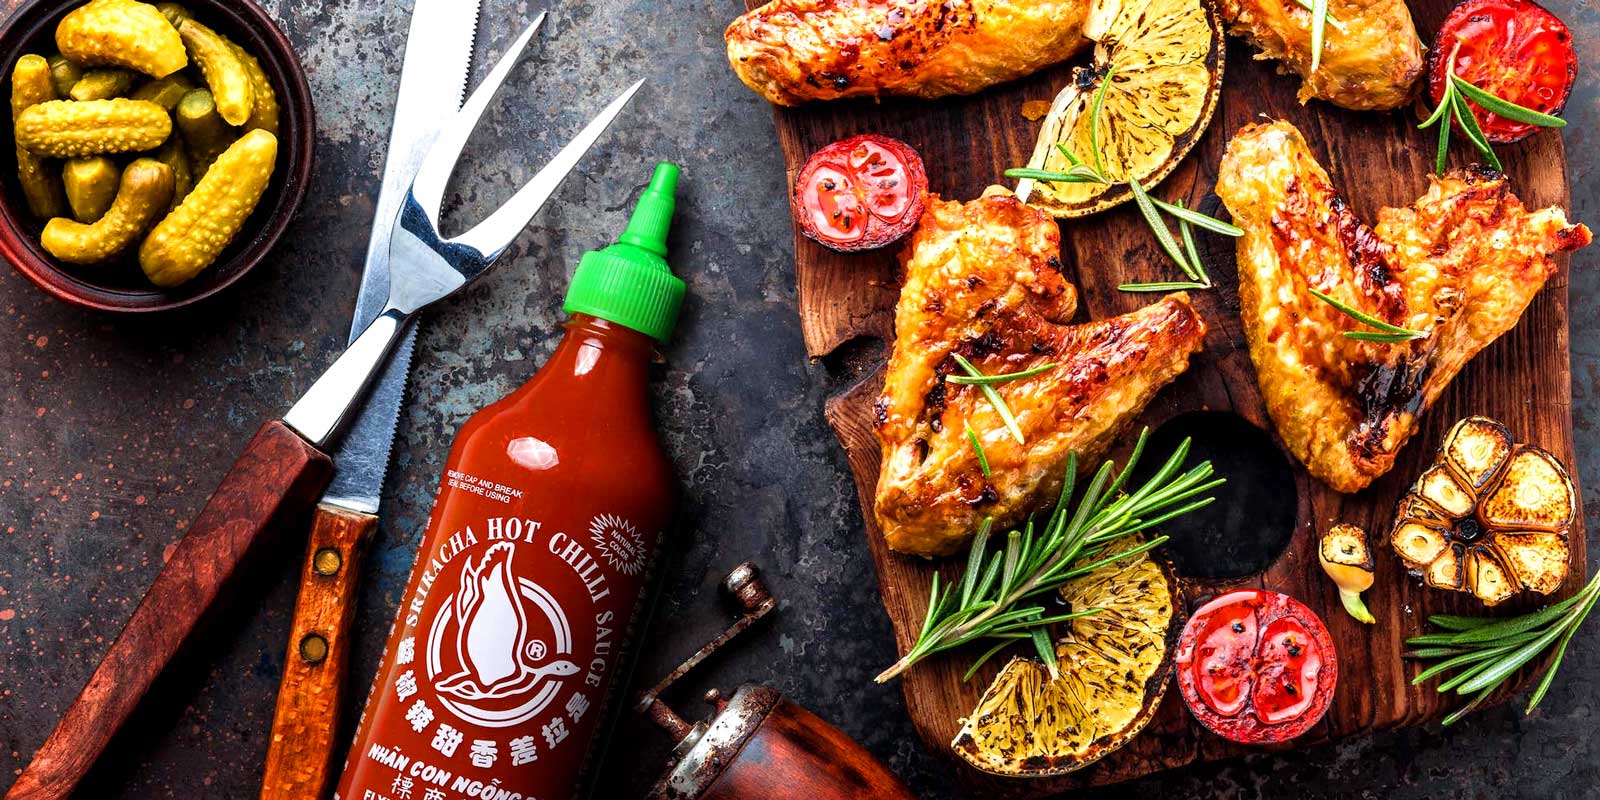 Sriracha sauser fra Flying Goose I 1999 ble vart foersteklasses thailandske sausmerke, Flying Goose, lansert med mal om a heve standarden pa varme sauser og gi matelskere maksimalt niva av smak for a komplementere alle slags smakfulle godbiter.